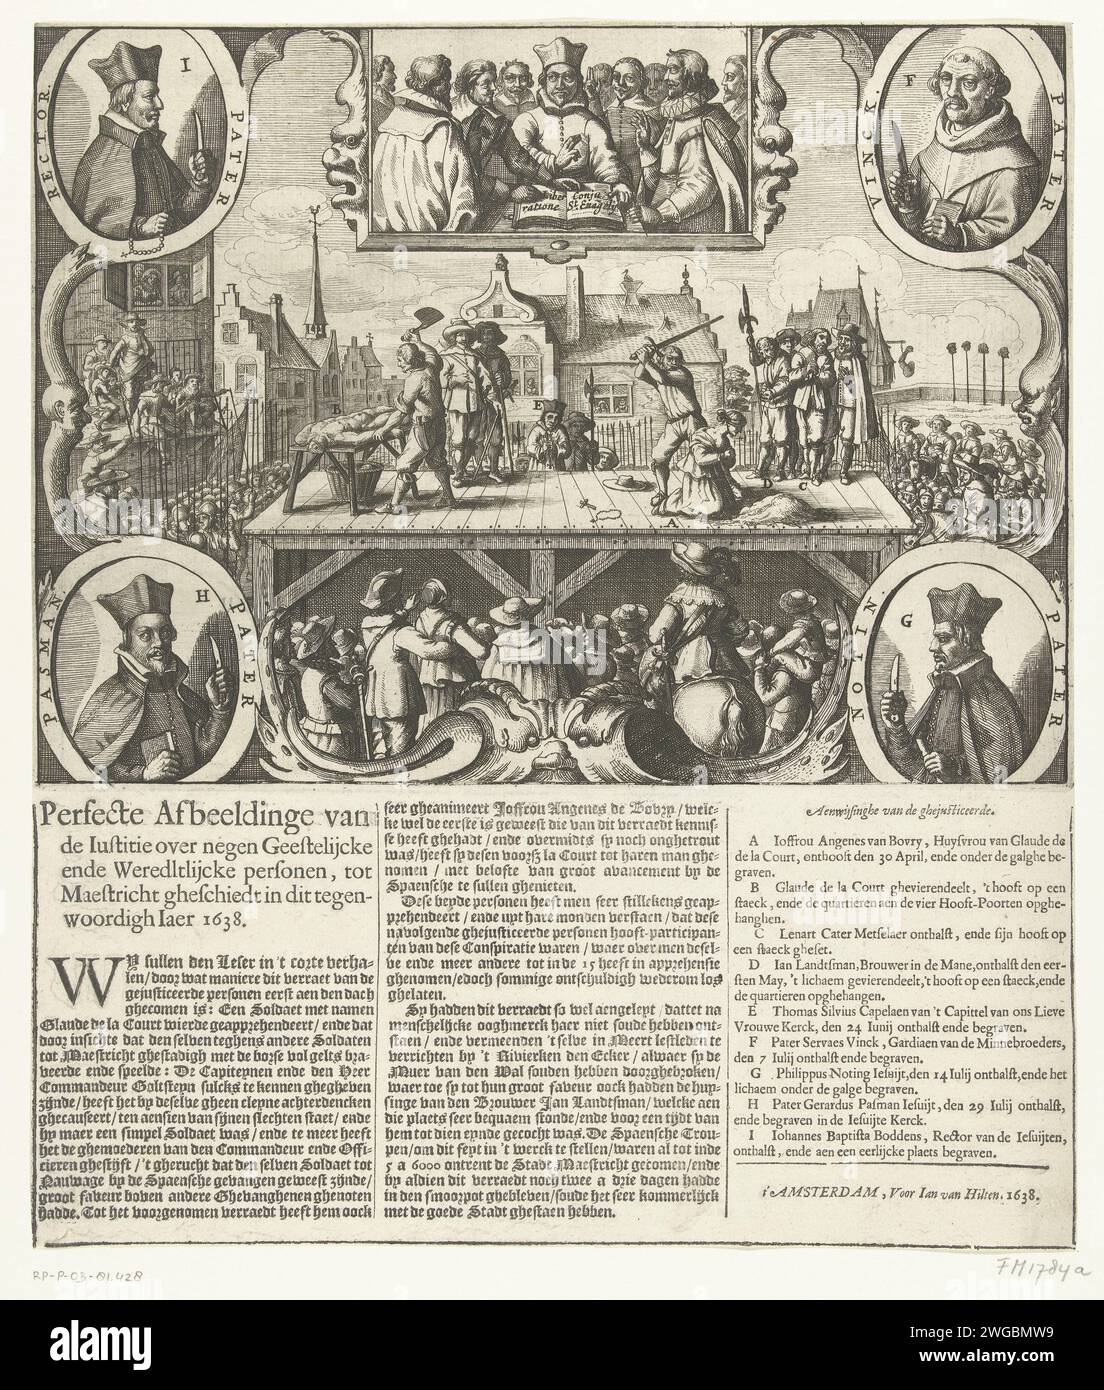 Hinrichtung der neun Menschen, die den Spaniern den Maastricht zu verraten geschworen haben, 1638, 1638 gedruckte Hinrichtungen in Maastricht von den neun Leuten, die den Spaniern den Maastricht verraten, 1638. Auf einem Gerüst wird Claude de la Court gefeiert und seine Frau Angenes van Bovry wird am 30. April 1638 enthauptet. In den Ecken der vier römischen Geistlichen, die an der Verschwörung beteiligt waren und im Juli enthauptet wurden. Oben schwören die neun Verschwörer auf die Bibel. Unter dem Druck ist ein Text aus 3 Spalten mit einer Legende des verurteilten A-I gedruckt. Druckerei: Nord-Niederlande spublisher: A Stockfoto